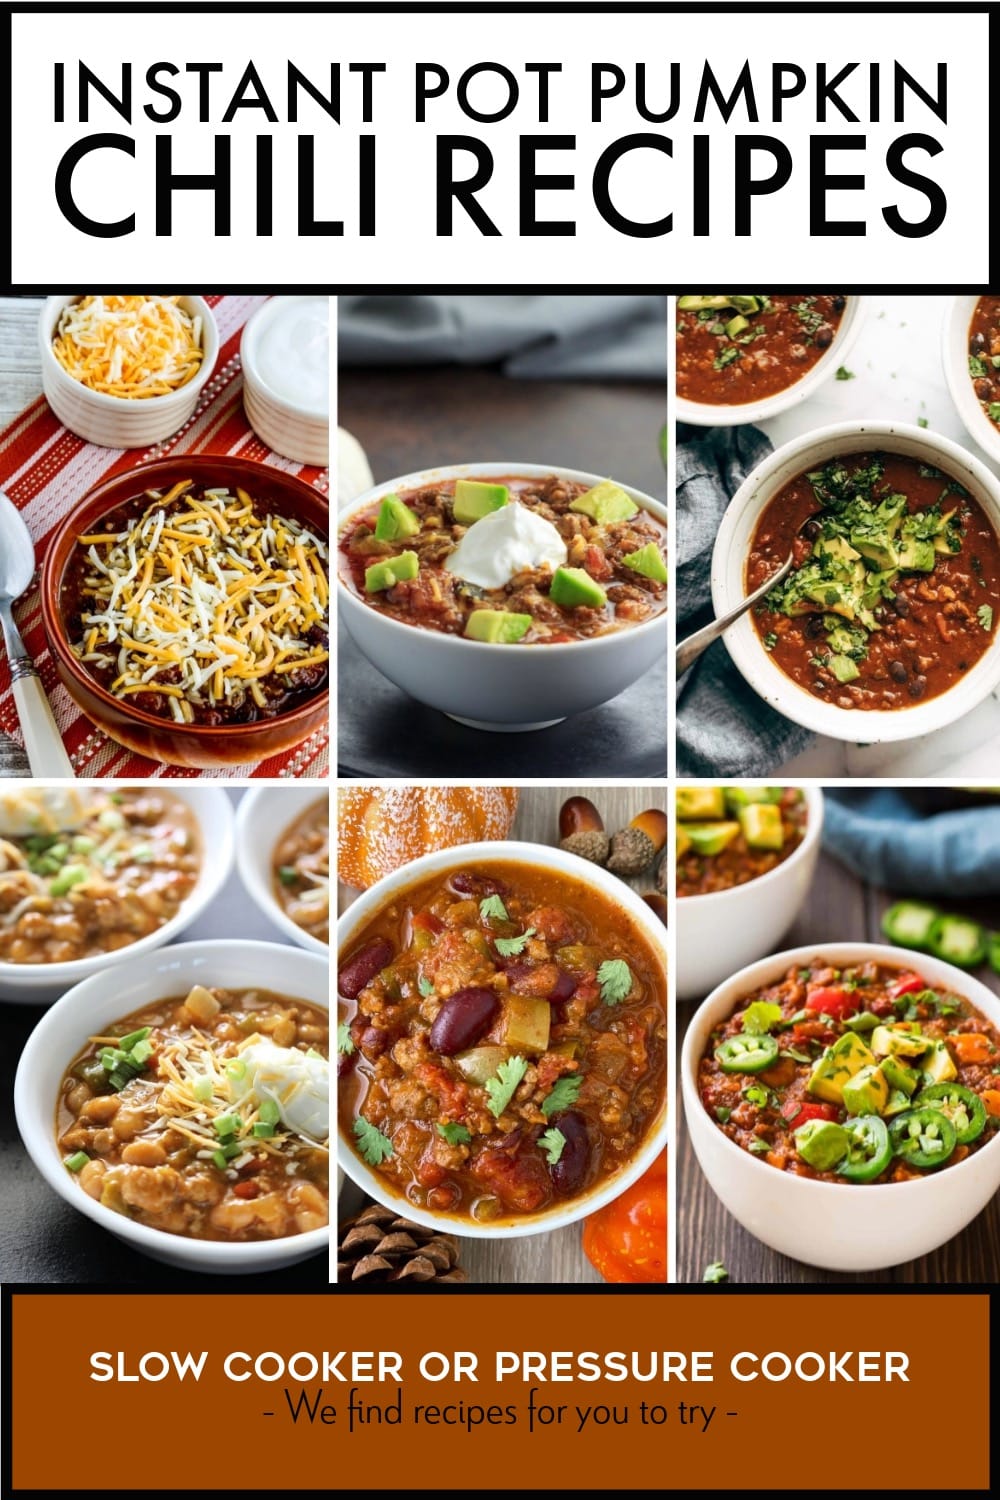 Pinterest image of Instant Pot Pumpkin Chili Recipes